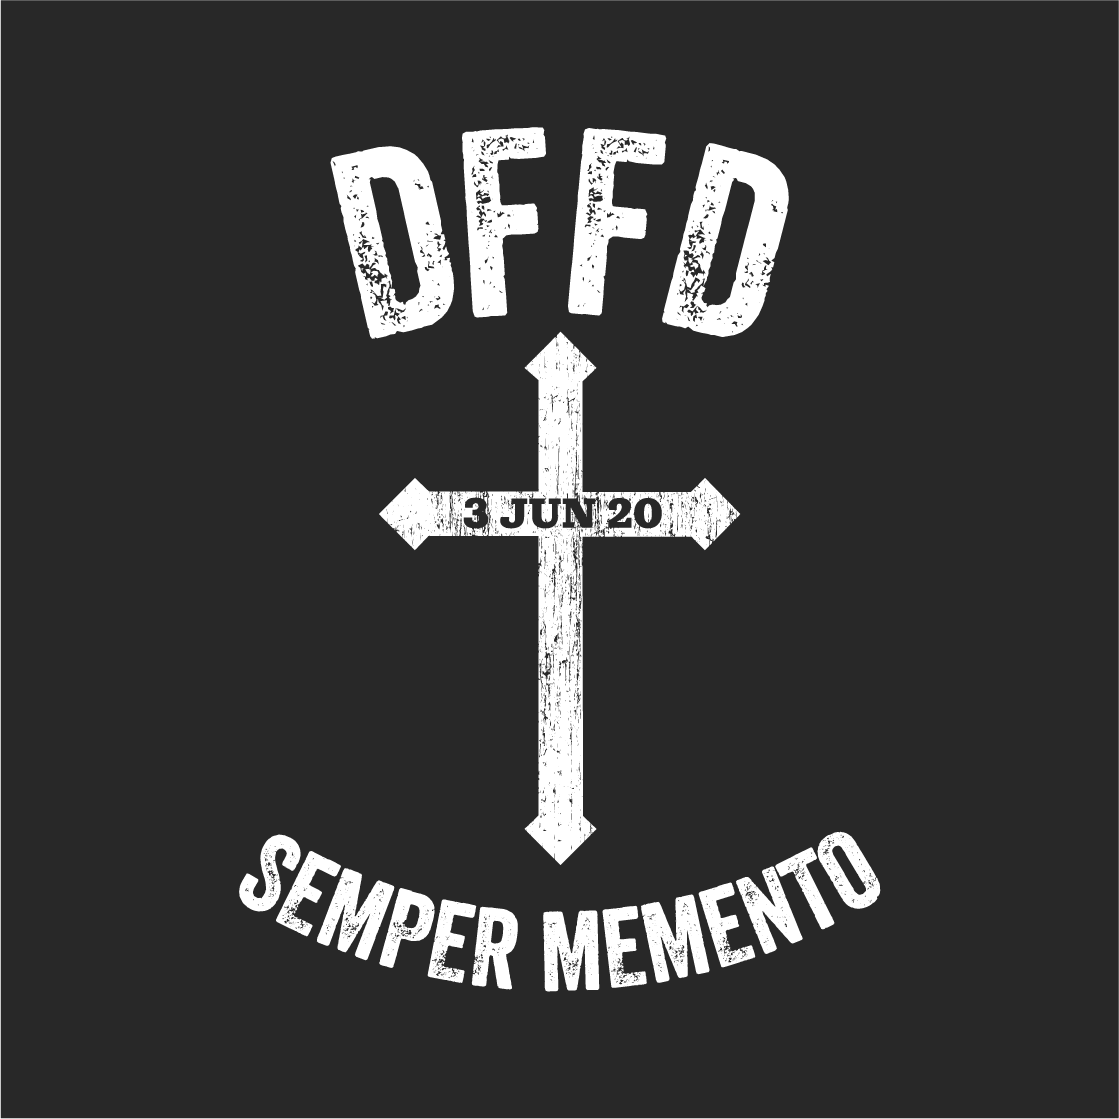 Semper Memento Gregg! shirt design - zoomed